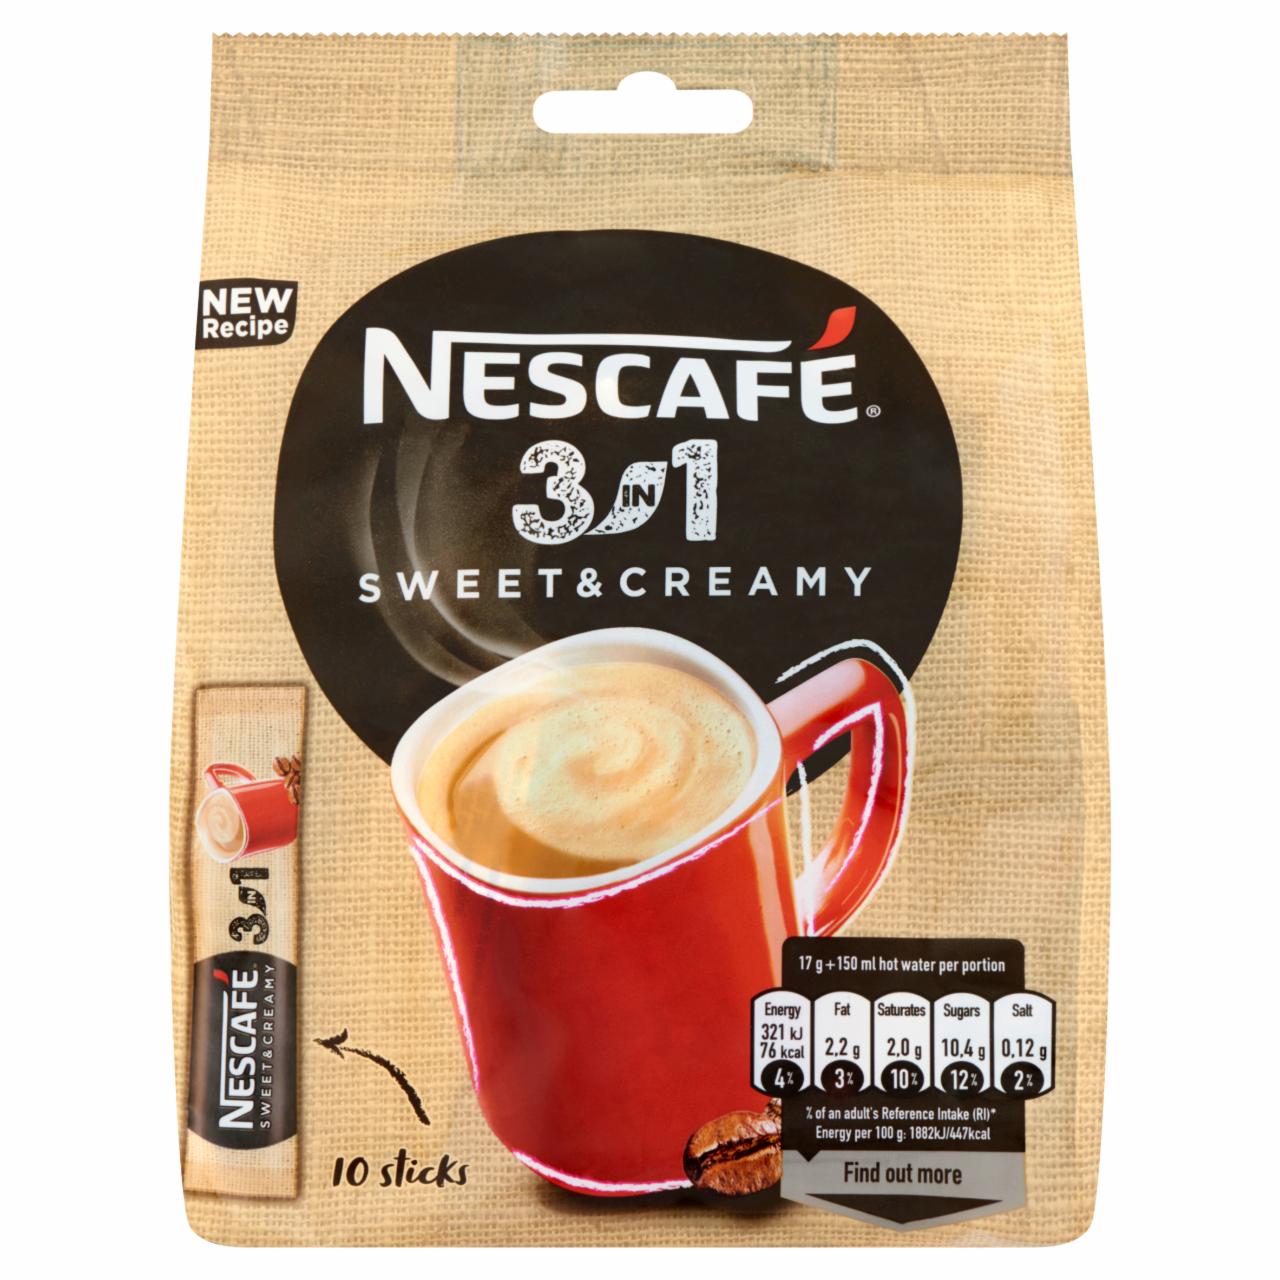 Képek - Nescafé 3in1 Sweet & Creamy azonnal oldódó kávéspecialitás 10 x 17 g (170 g)